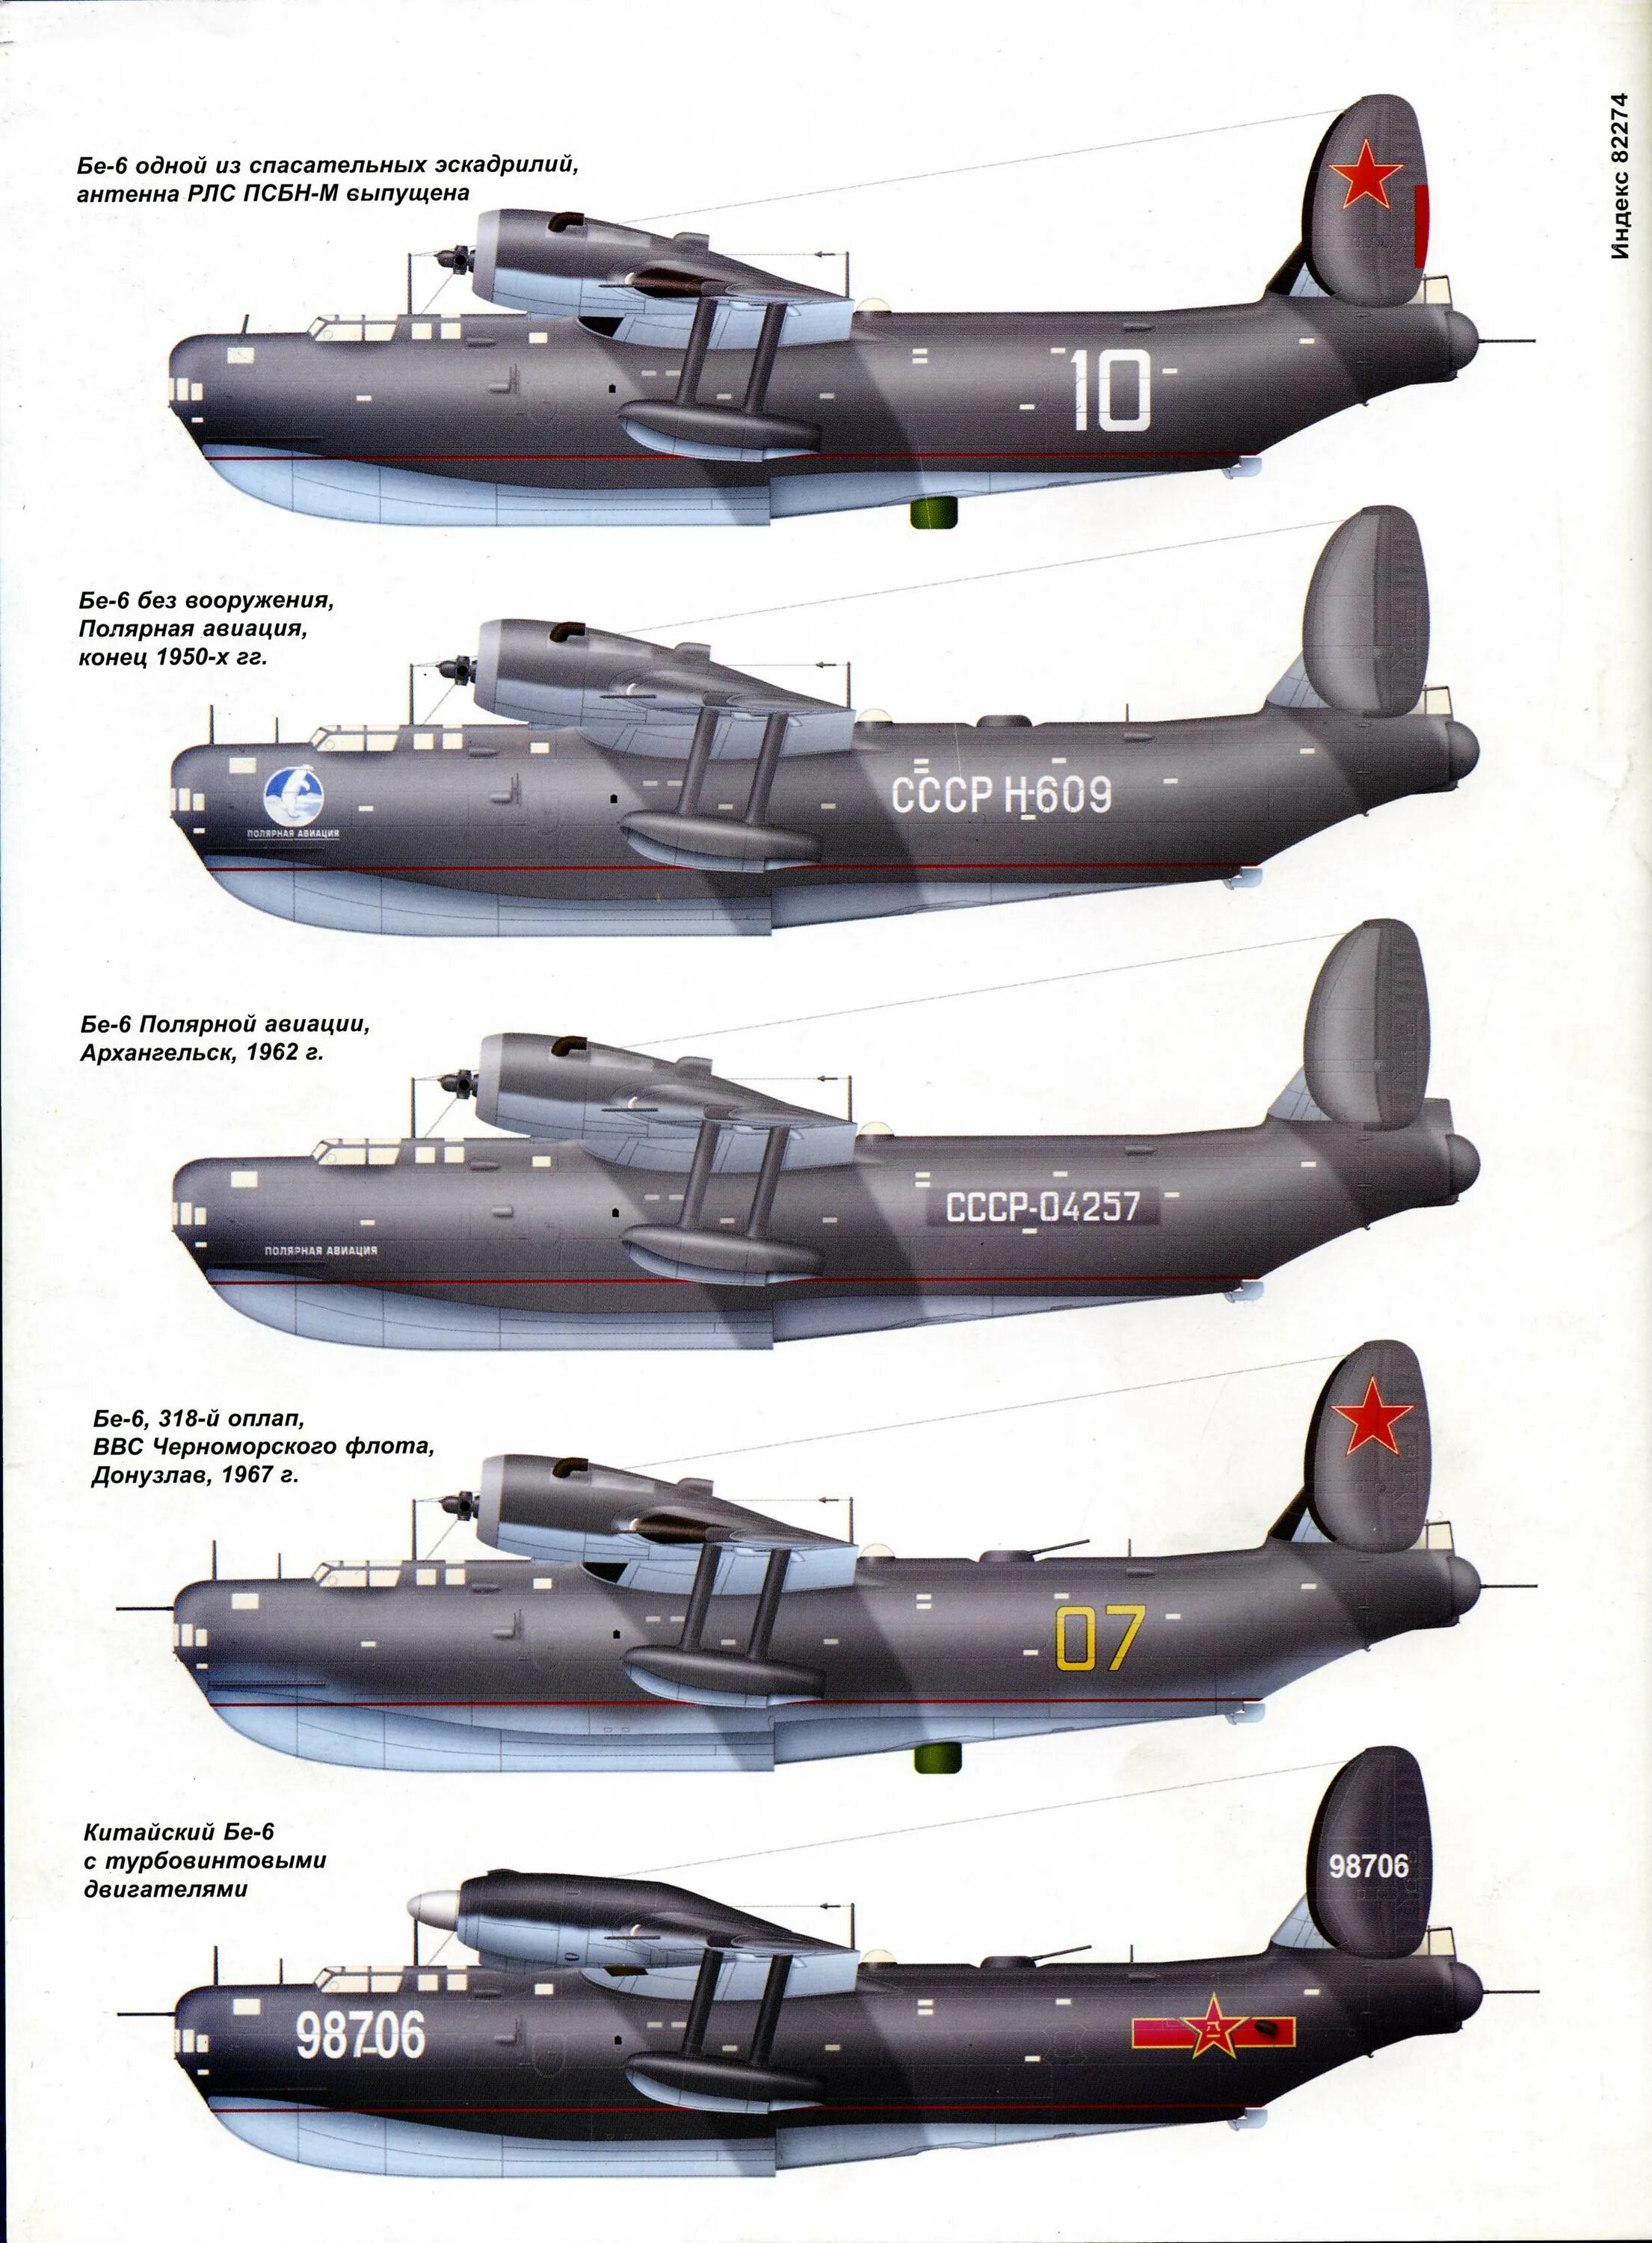 Самолет-амфибия бе-6. Летающая лодка бе-6. Бе-6 в полярной авиации. Б 6 самолет